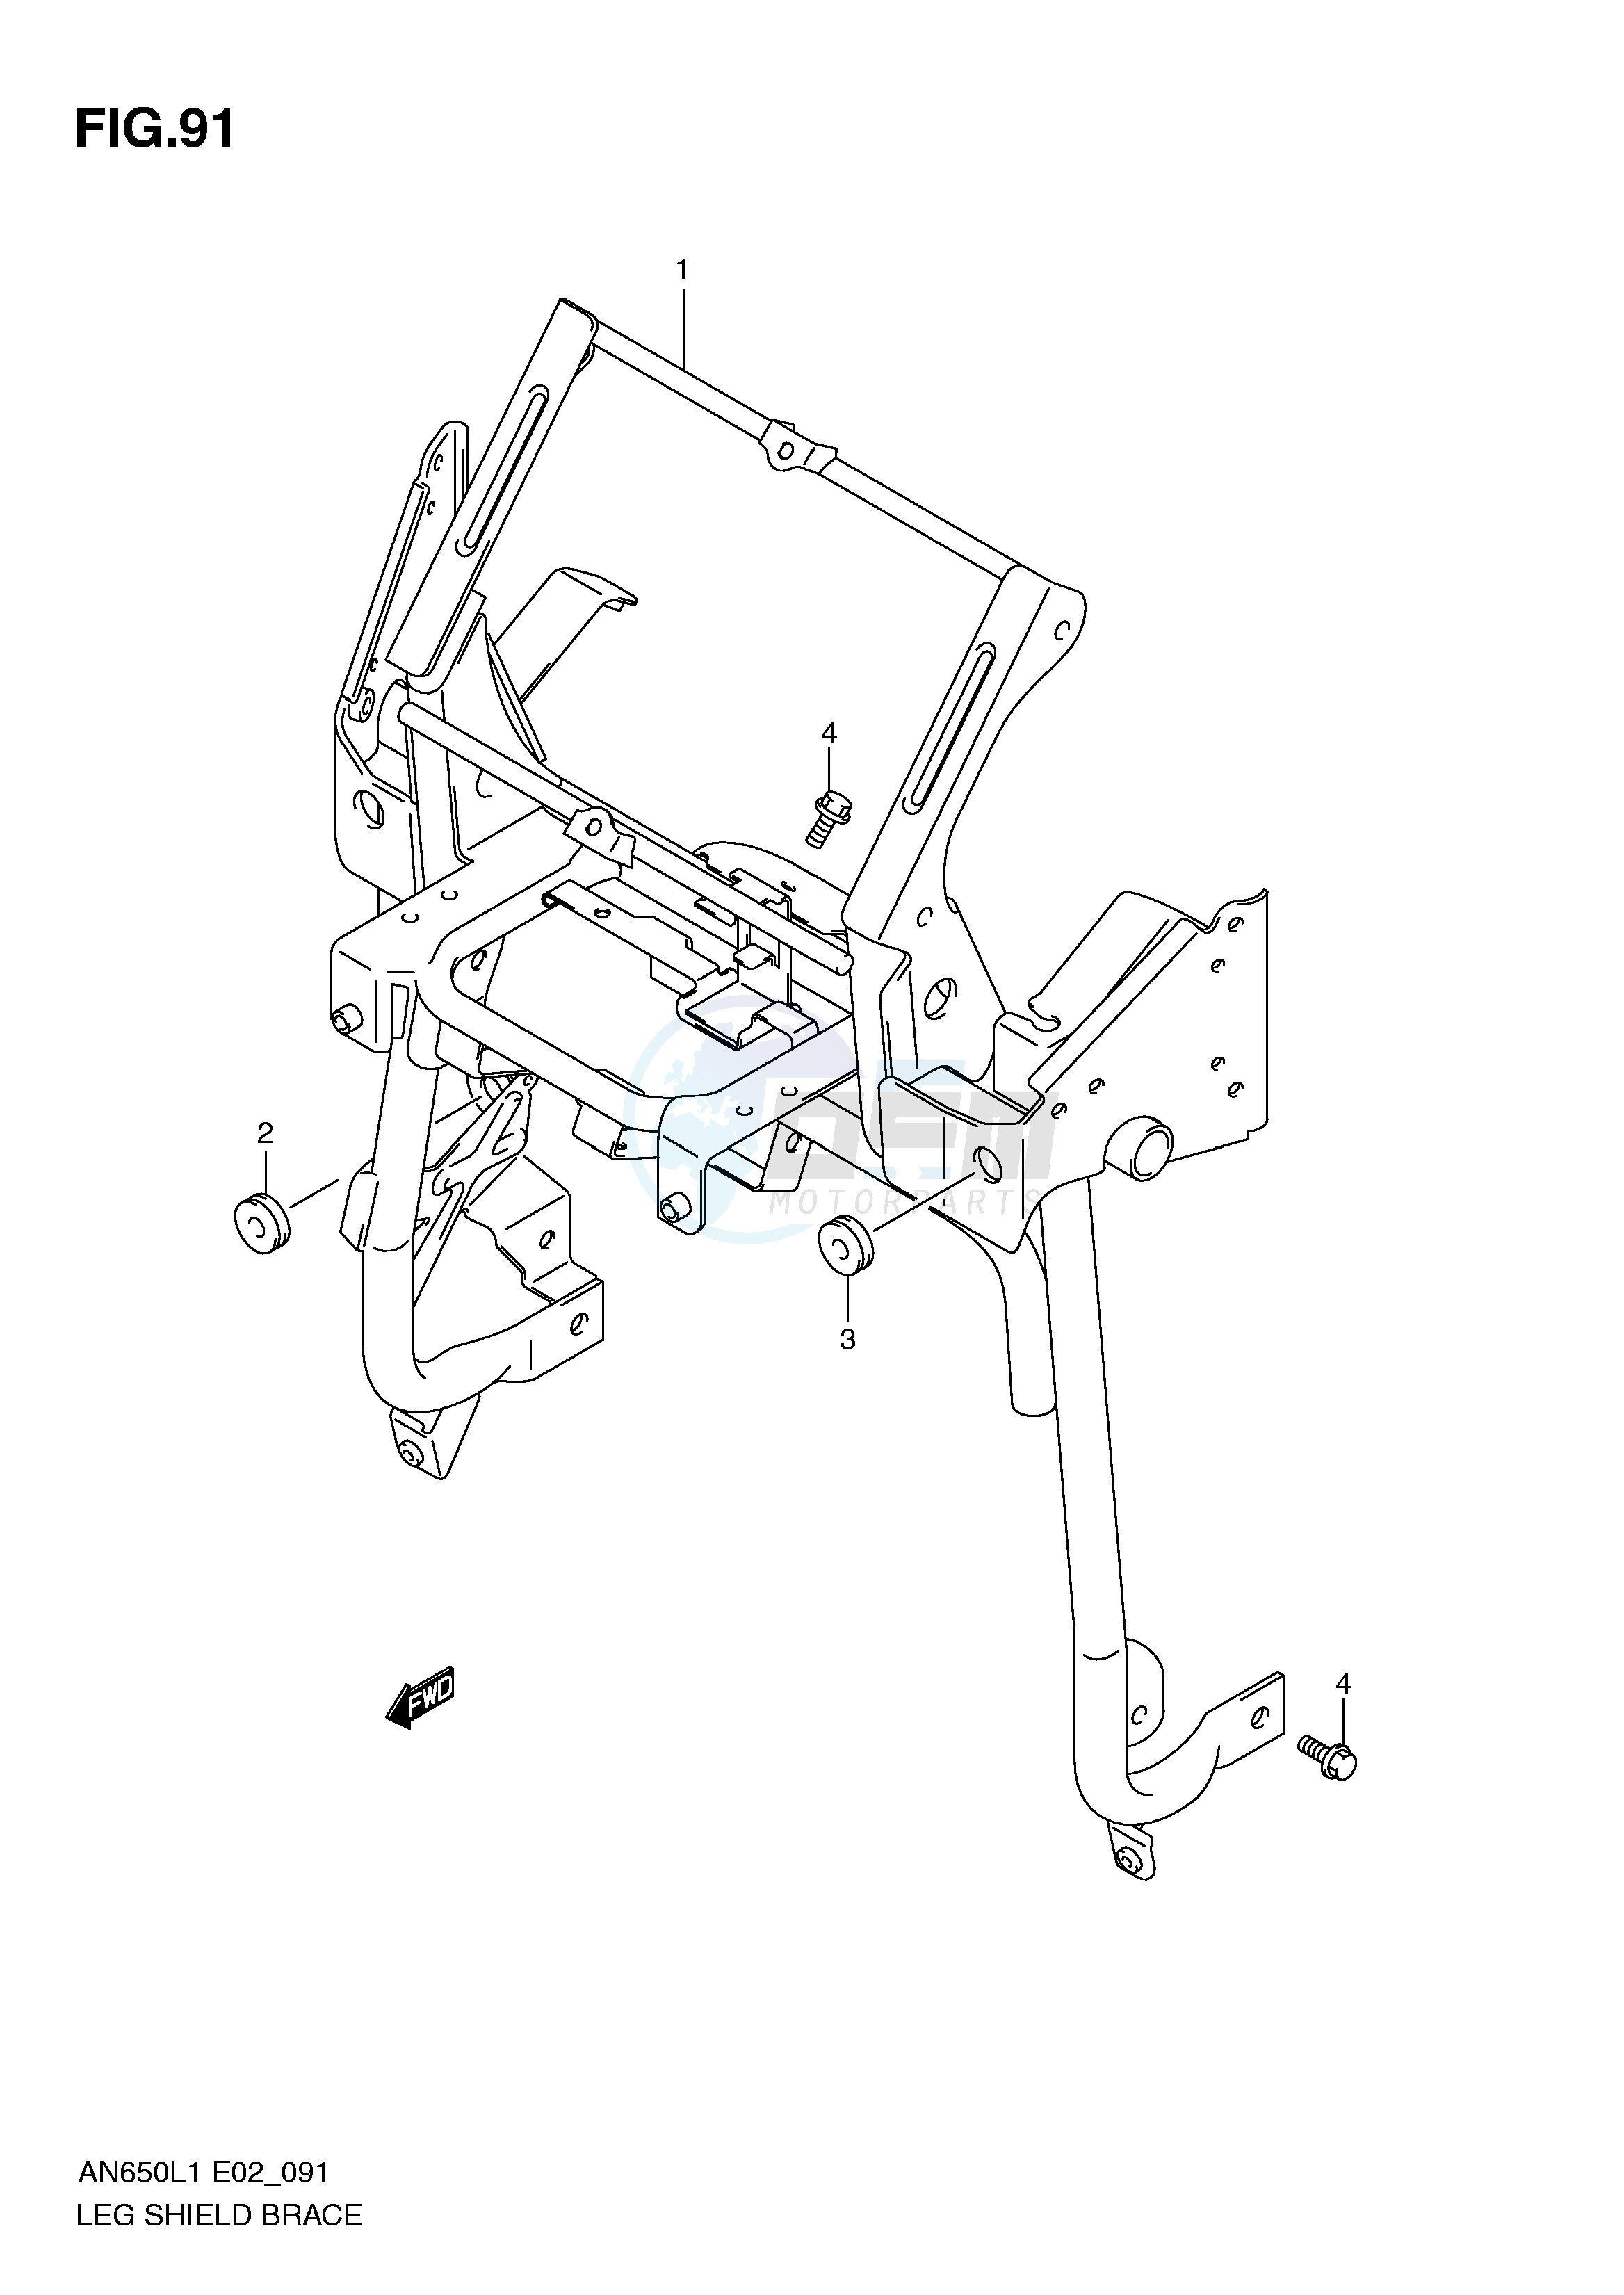 LEG SHIELD BRACE (AN650AL1 E2) blueprint